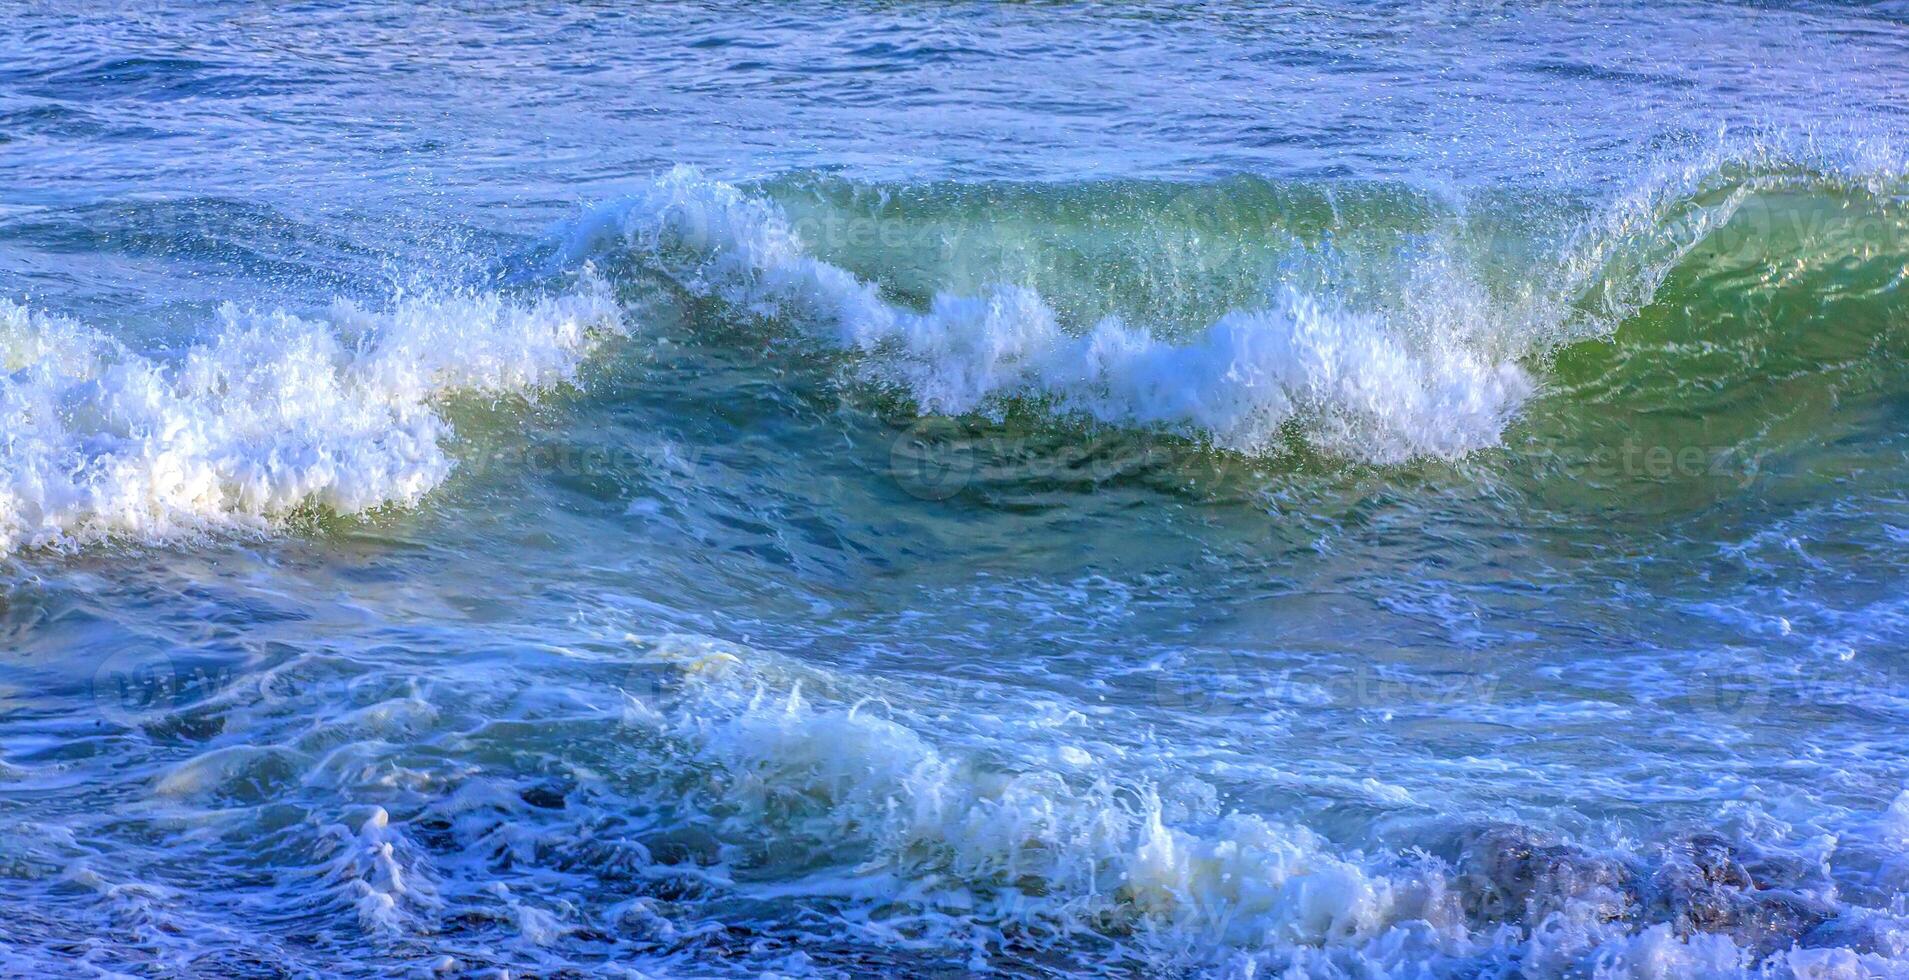 hav eller hav, vågor närbild se. grön - gul vågor hav vatten. kristall klar vatten foto